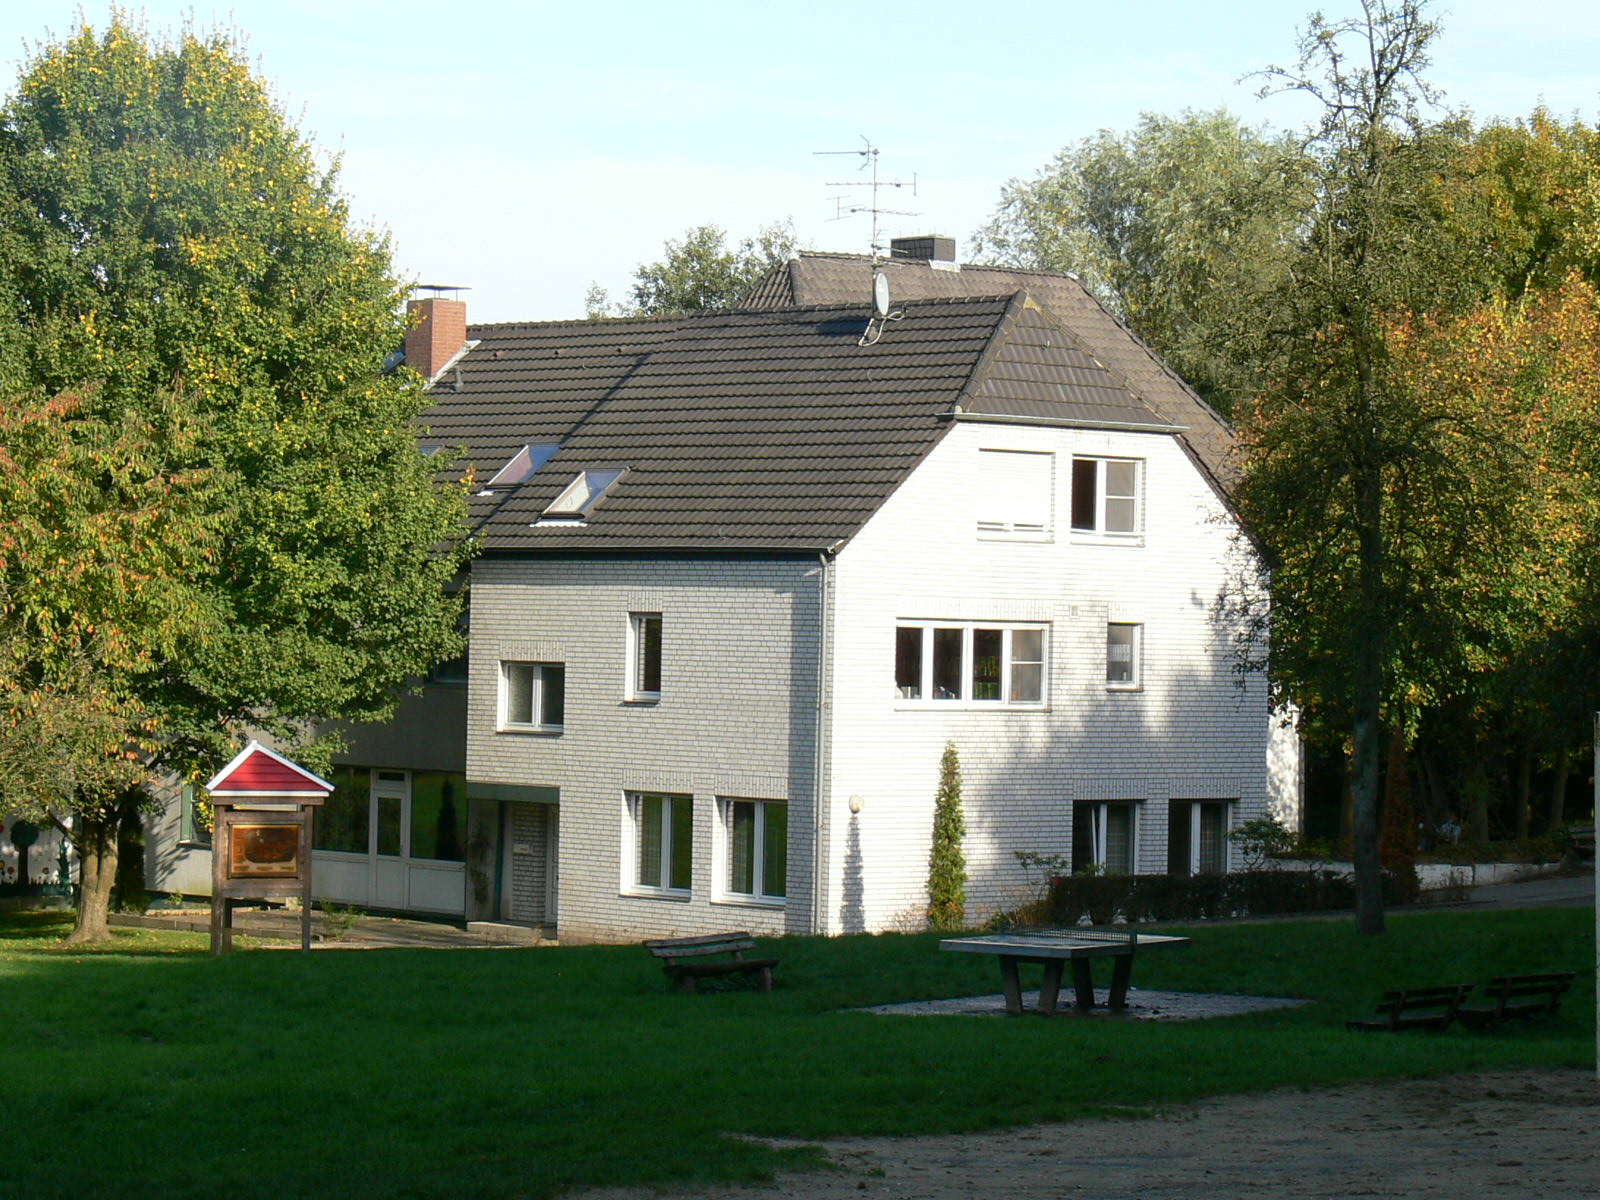 Forsthaus Hasenacker